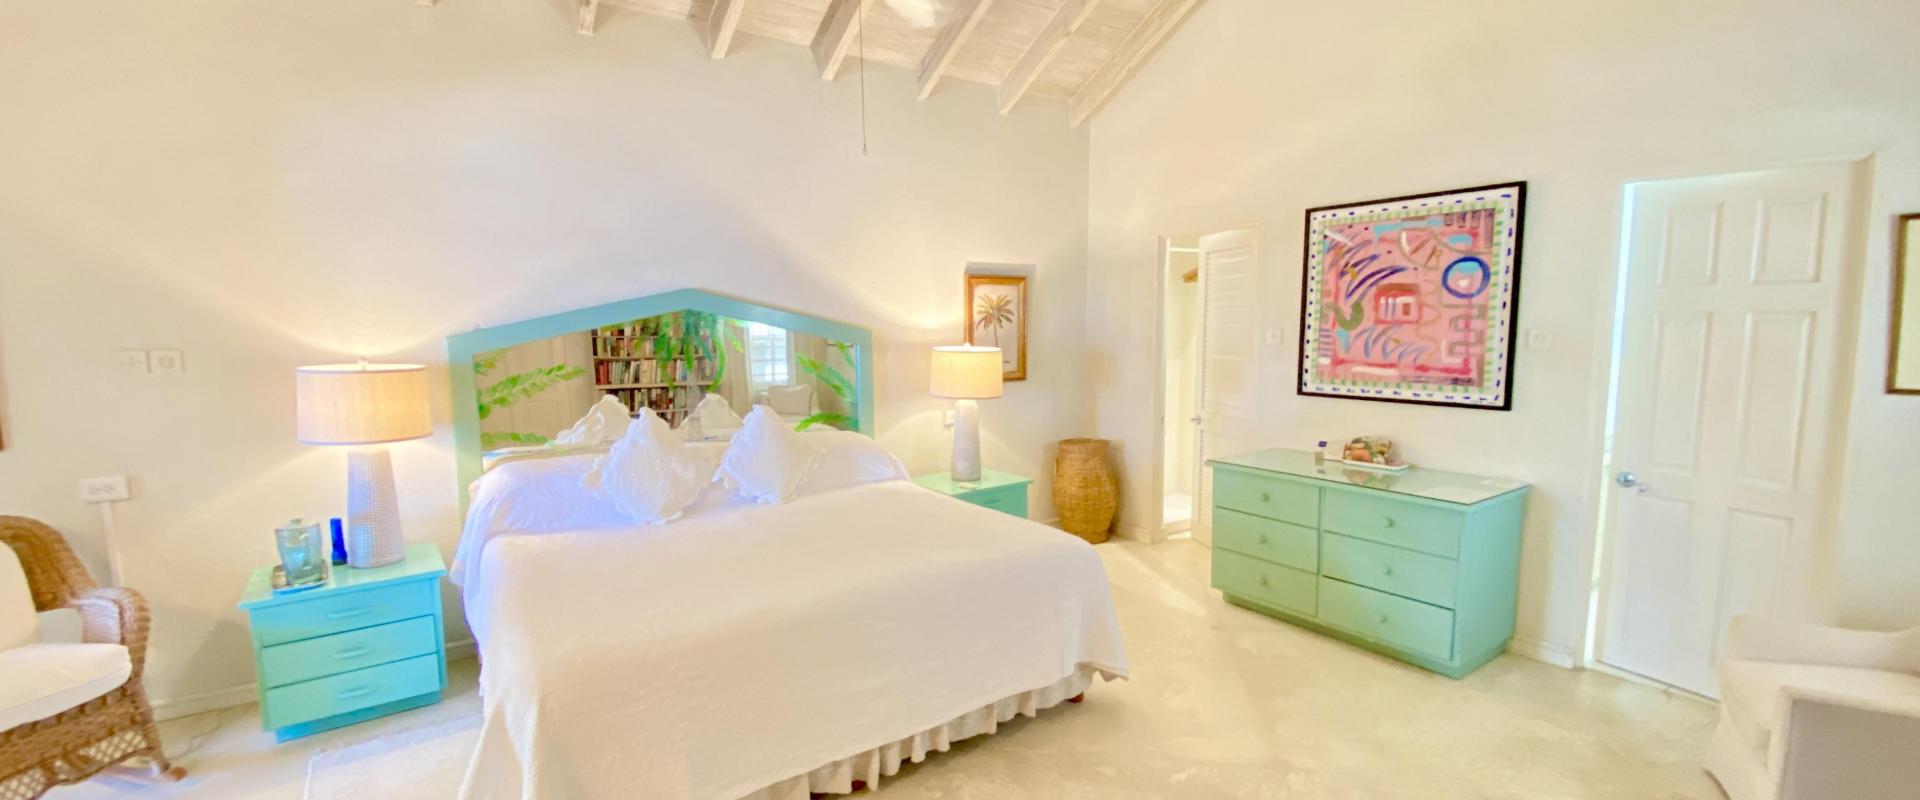 Beachfront Barbados Villa Rental Seascape Bedroom 1